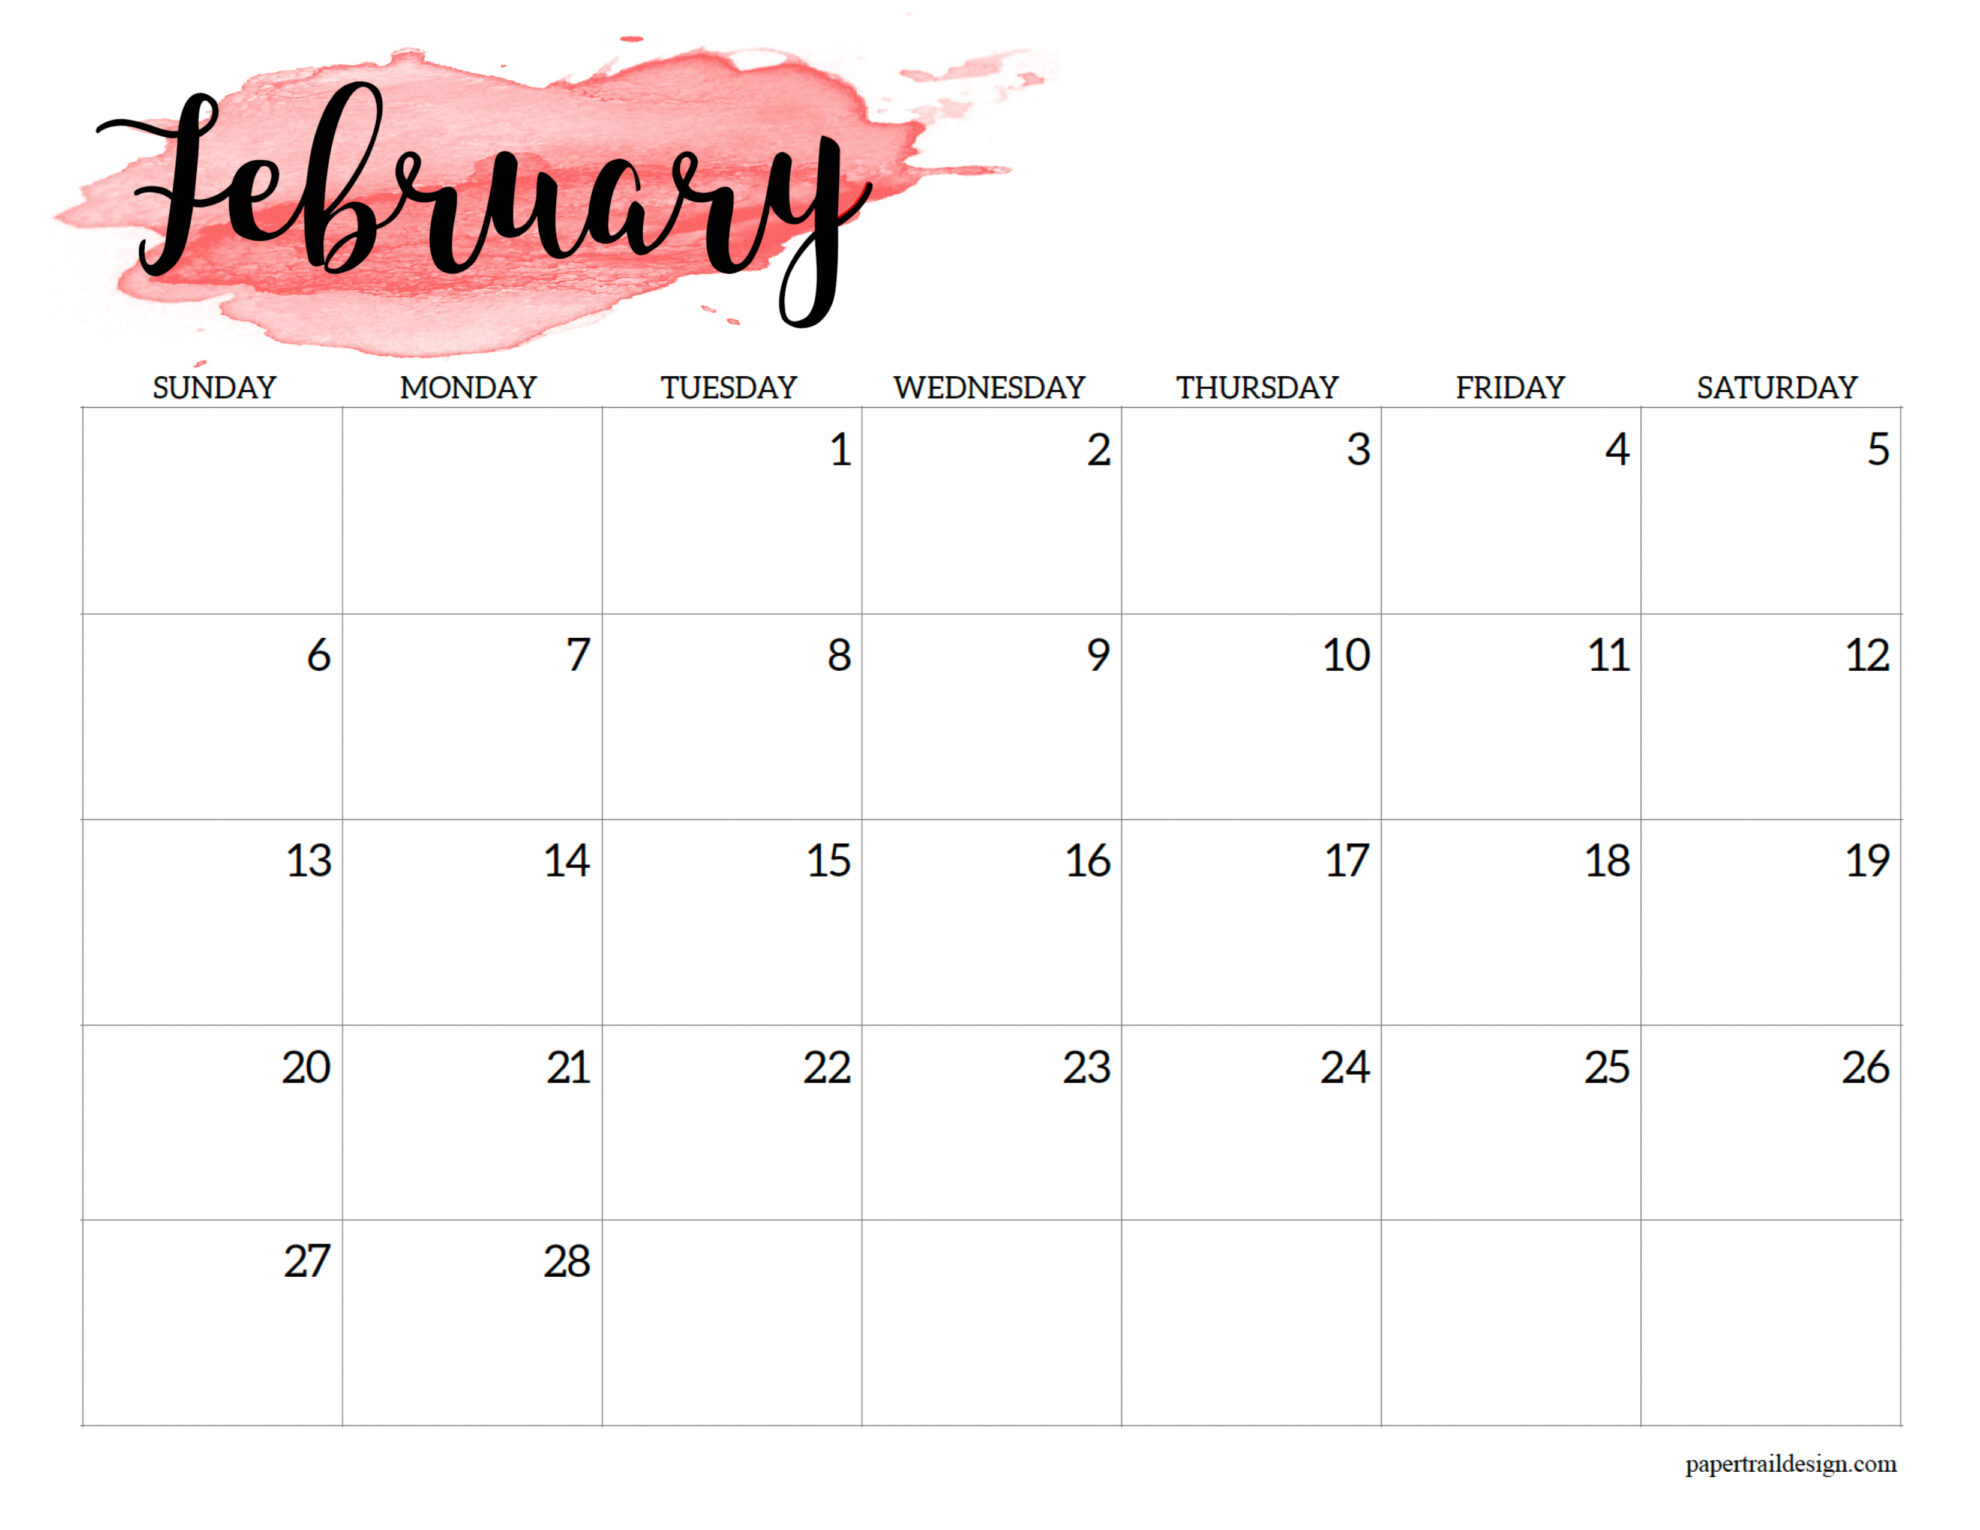 Feb 2022 Printable Calendar 2022 Calendar Printable - Watercolor - Paper Trail Design